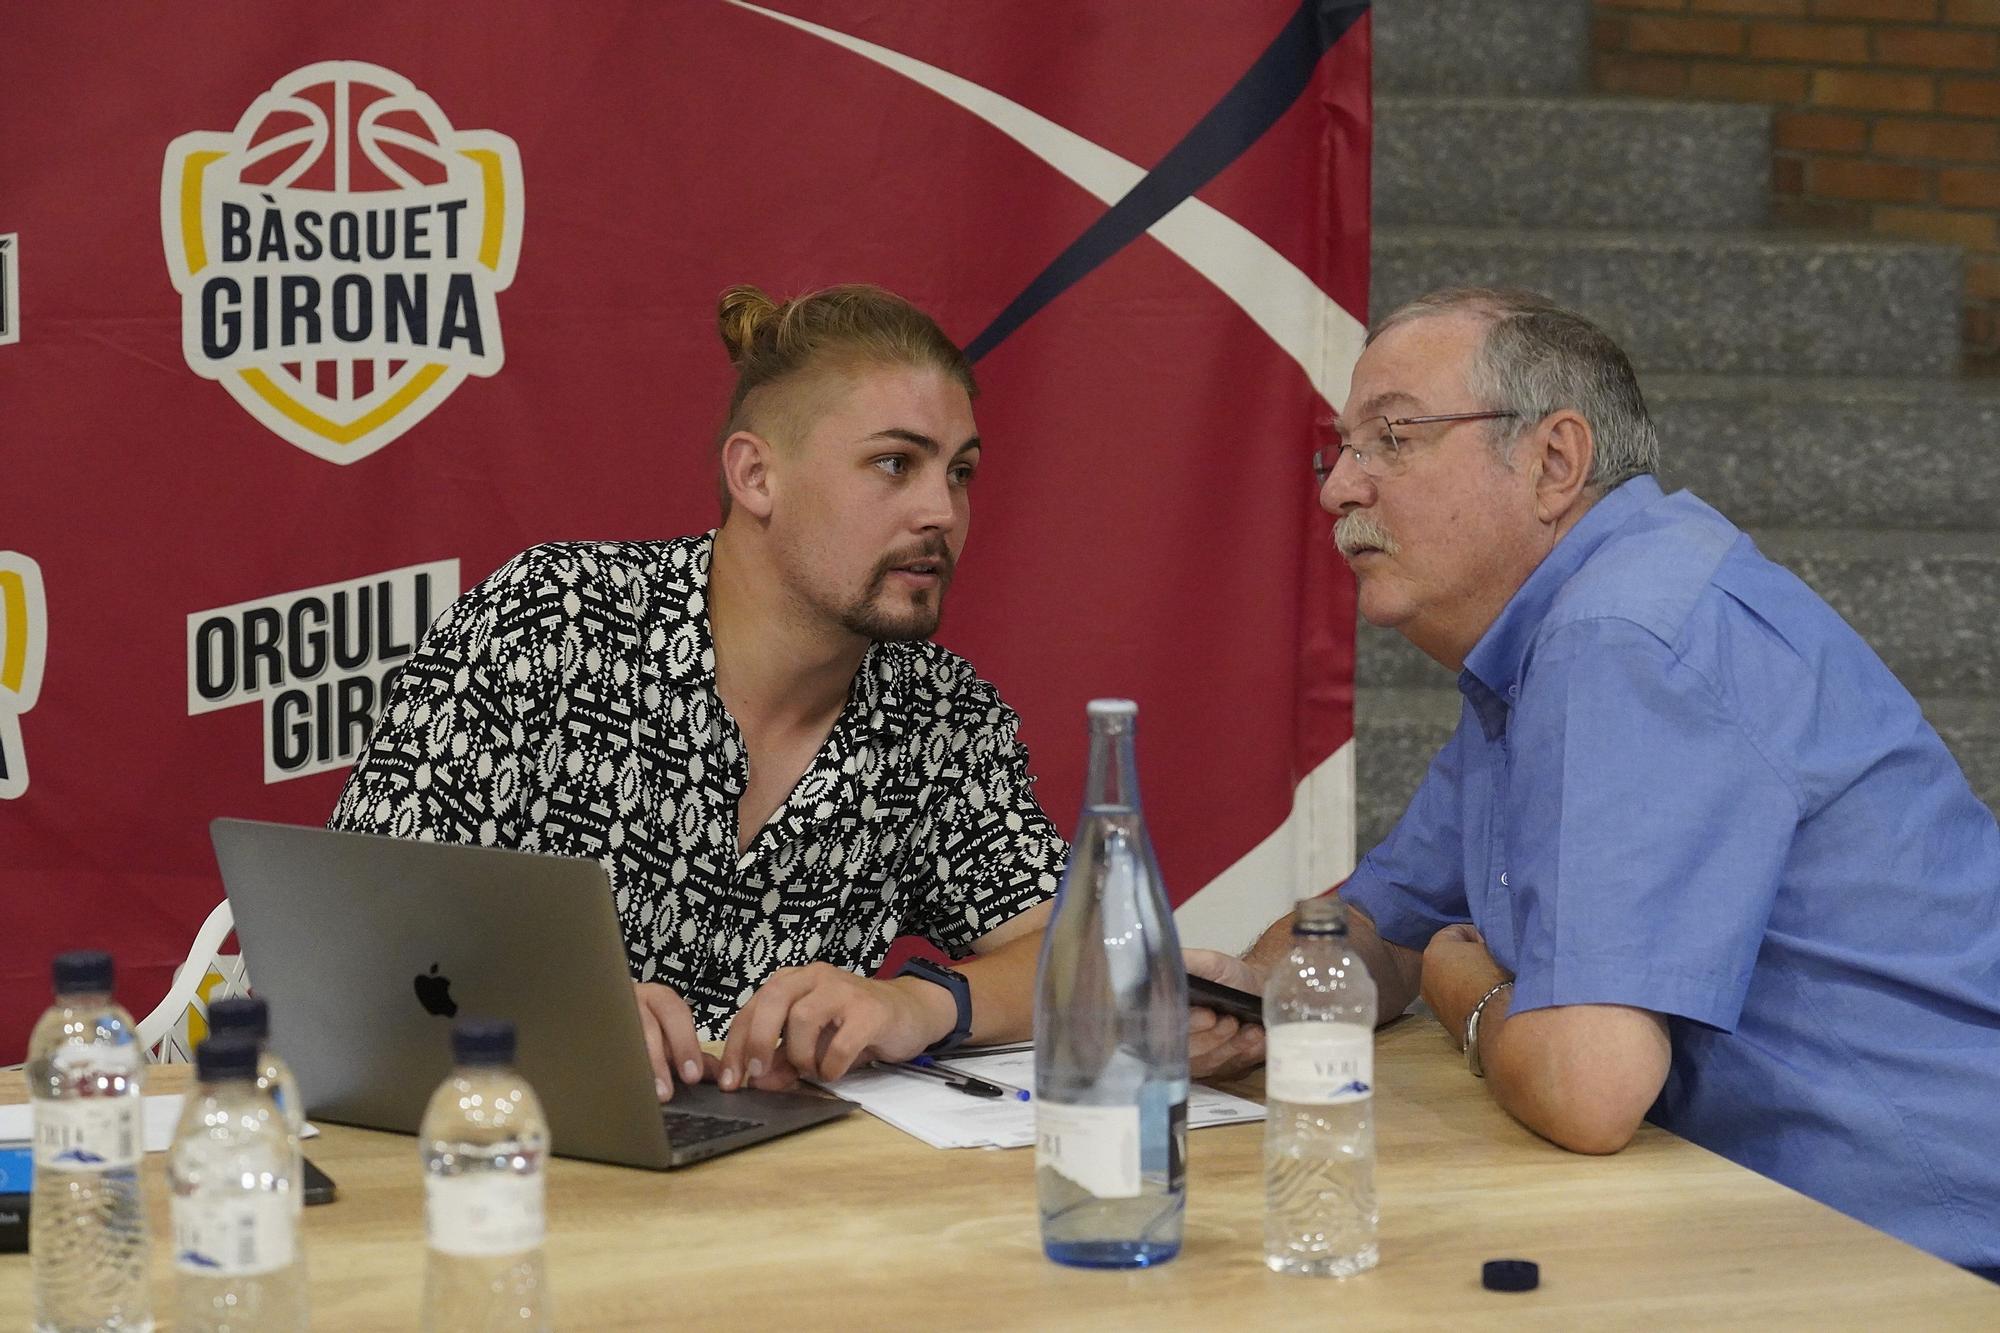 El Bàsquet Girona arrasa amb la venda d’abonaments per a l’ACB